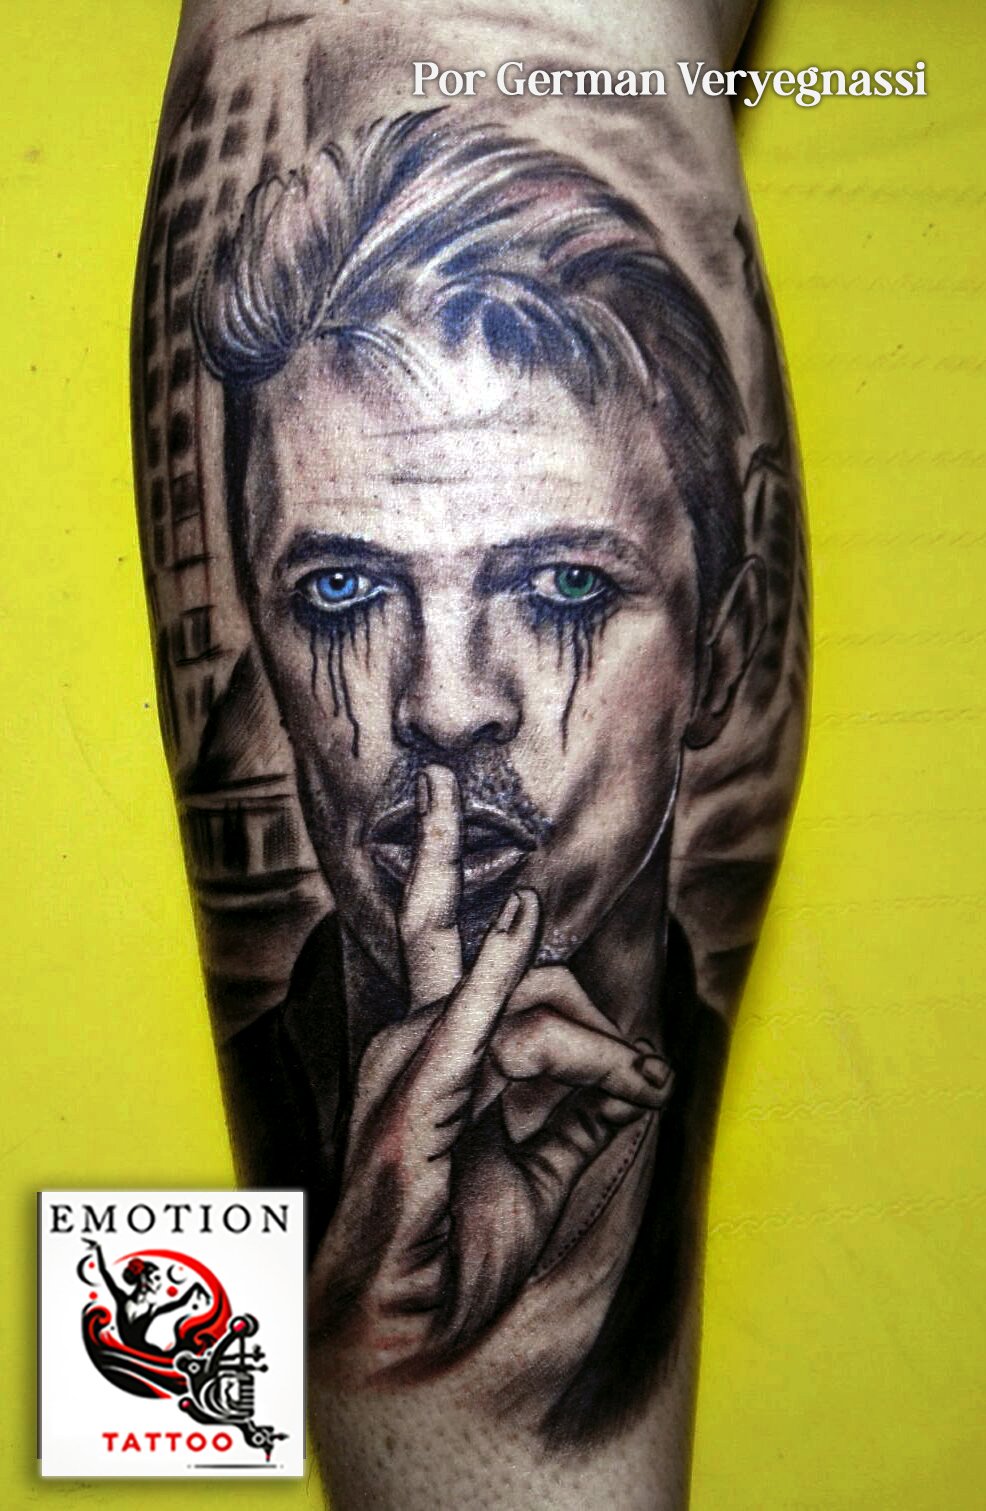 Descubre la intensidad de "Mirada Icónica: Homenaje a David Bowie", una obra maestra de tatuaje realizada por la destreza artística de Germán Veryegnassi. Este retrato en tinta, que adorna la piel como una galería móvil, capta la esencia enigmática de Bowie, con sus ojos penetrantes y la emblemática postura que invita al silencio. Las lágrimas en azul añaden una dimensión de profundidad emocional, recordando el impacto duradero de Bowie en la música y el arte. Cada línea y sombra está ejecutada con precisión, ofreciendo un tributo visual que resuena con fans y admiradores del ícono cultural. Este tatuaje no es solo una expresión de admiración, sino también una pieza de conversación que trasciende el tiempo, al igual que el legado de Bowie.